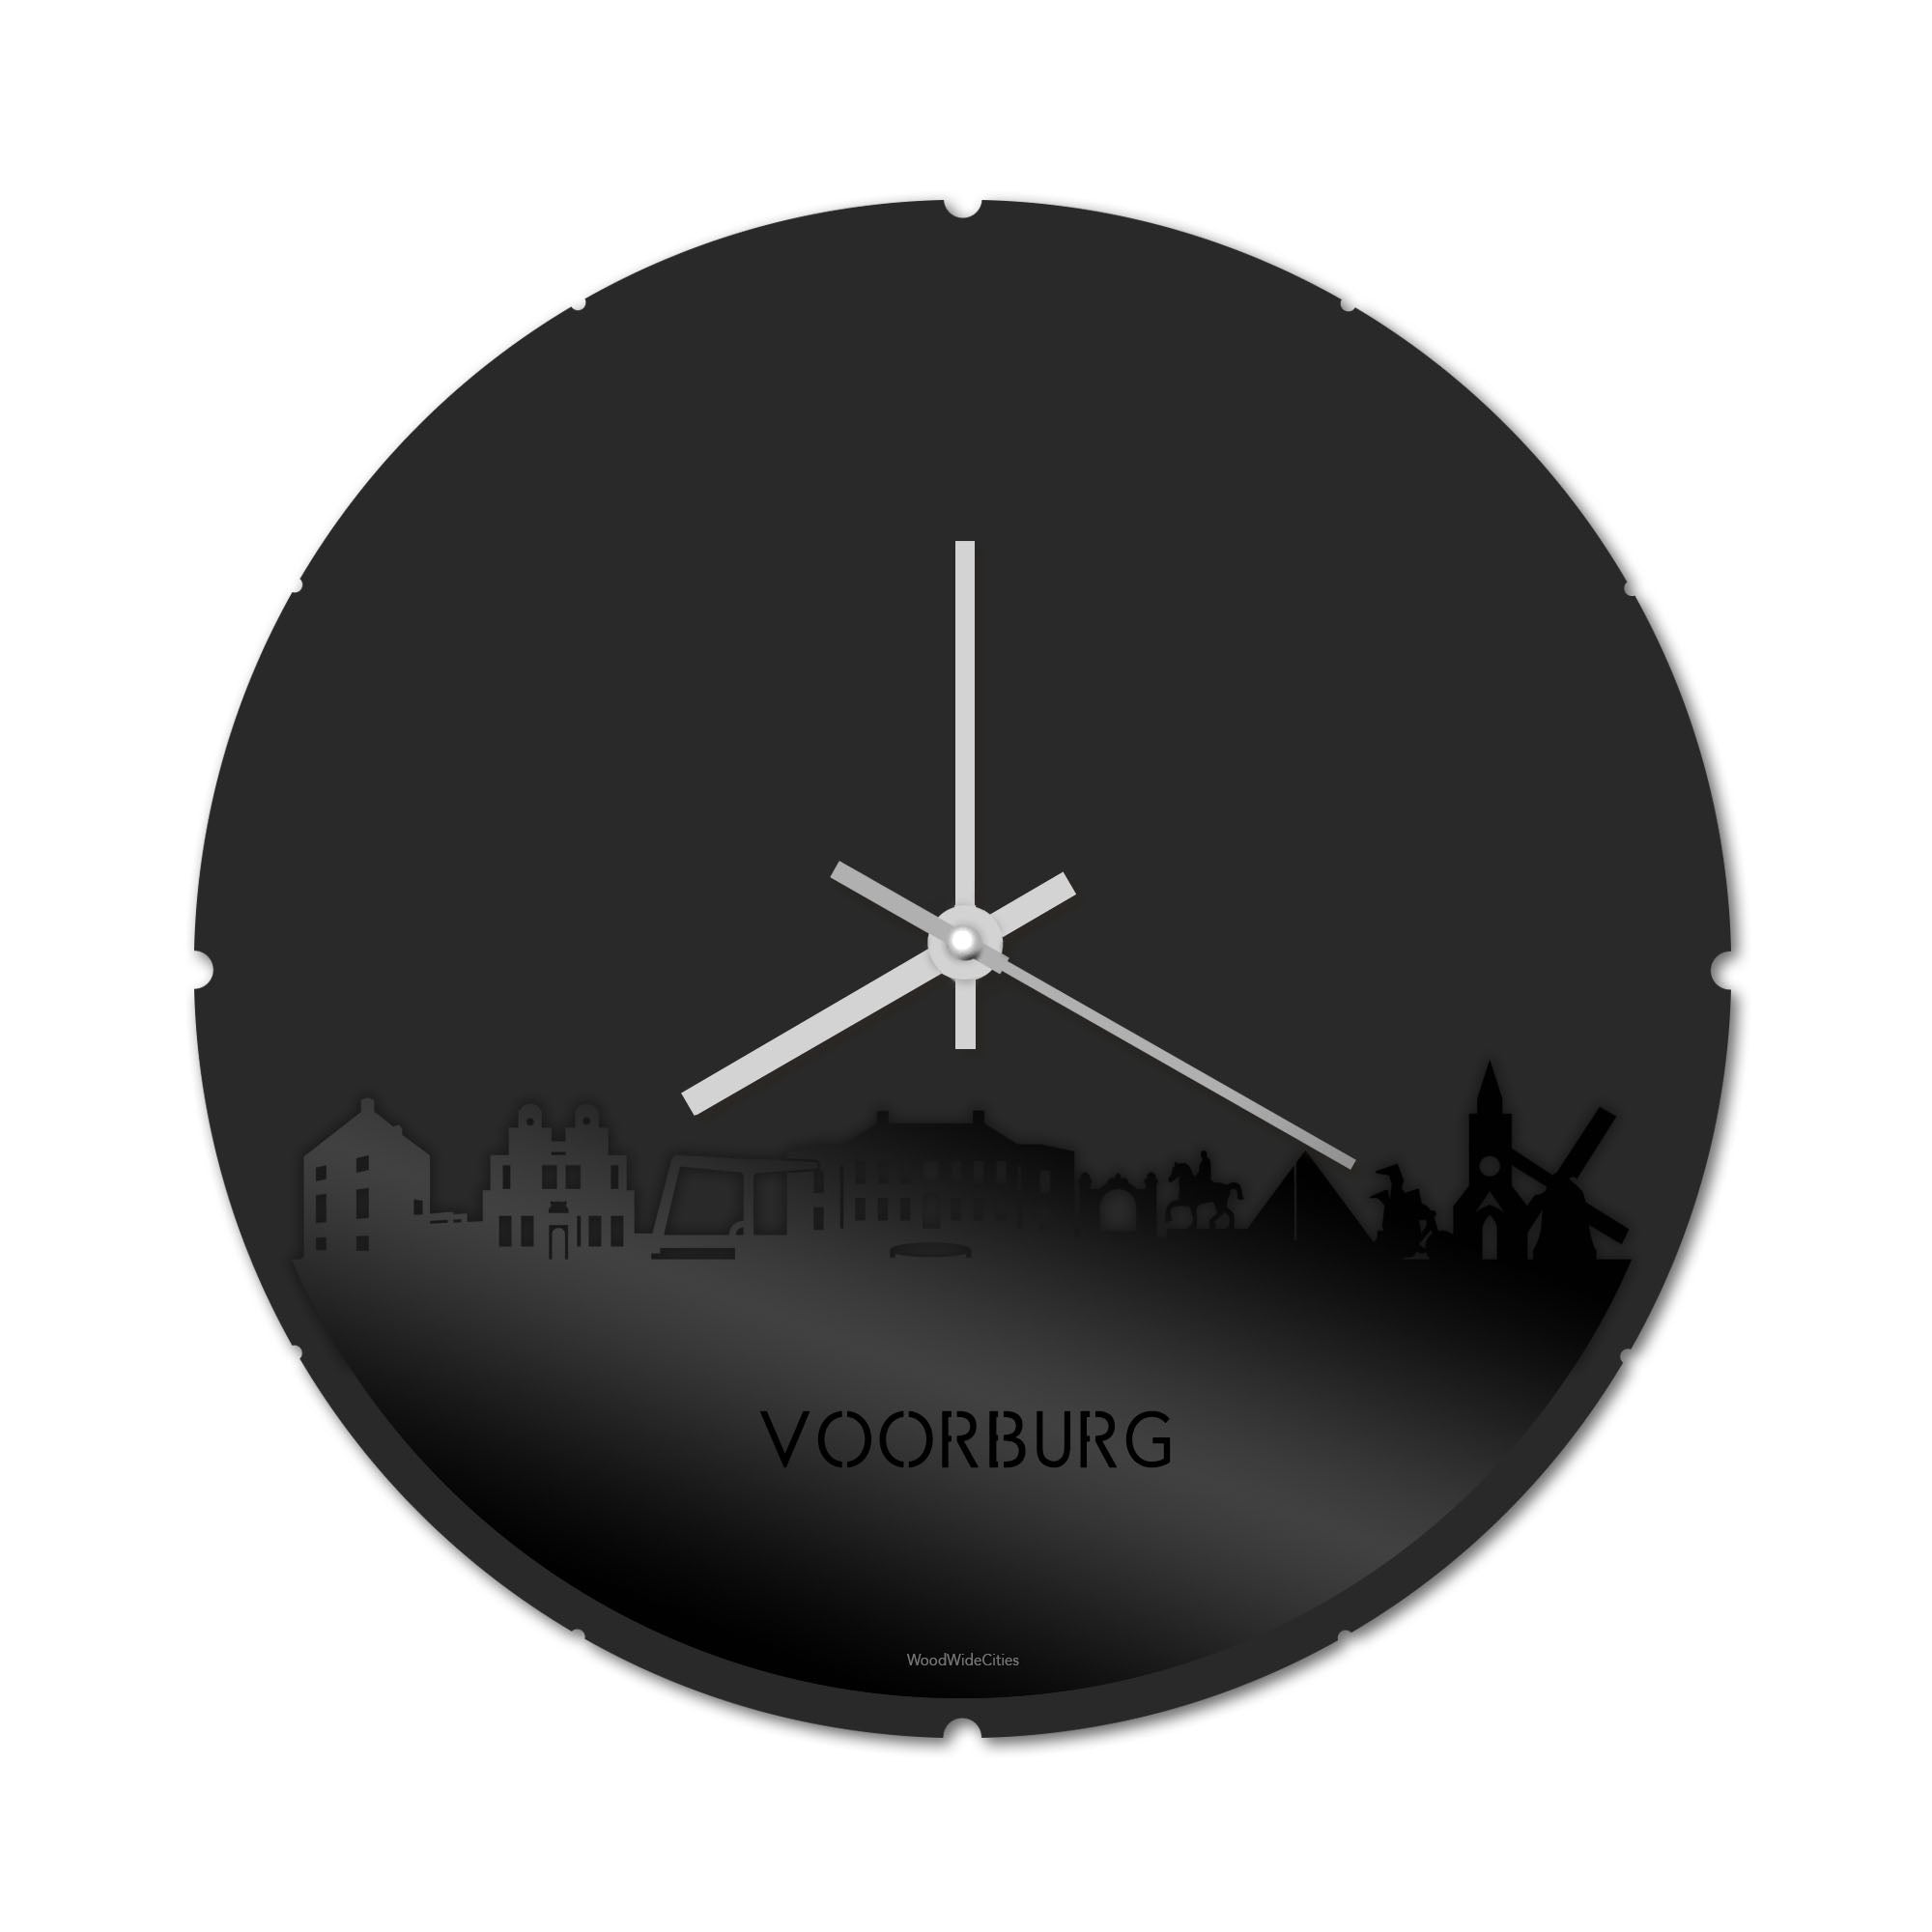 Skyline Klok Rond Voorburg Zwart glanzend gerecycled kunststof cadeau decoratie relatiegeschenk van WoodWideCities